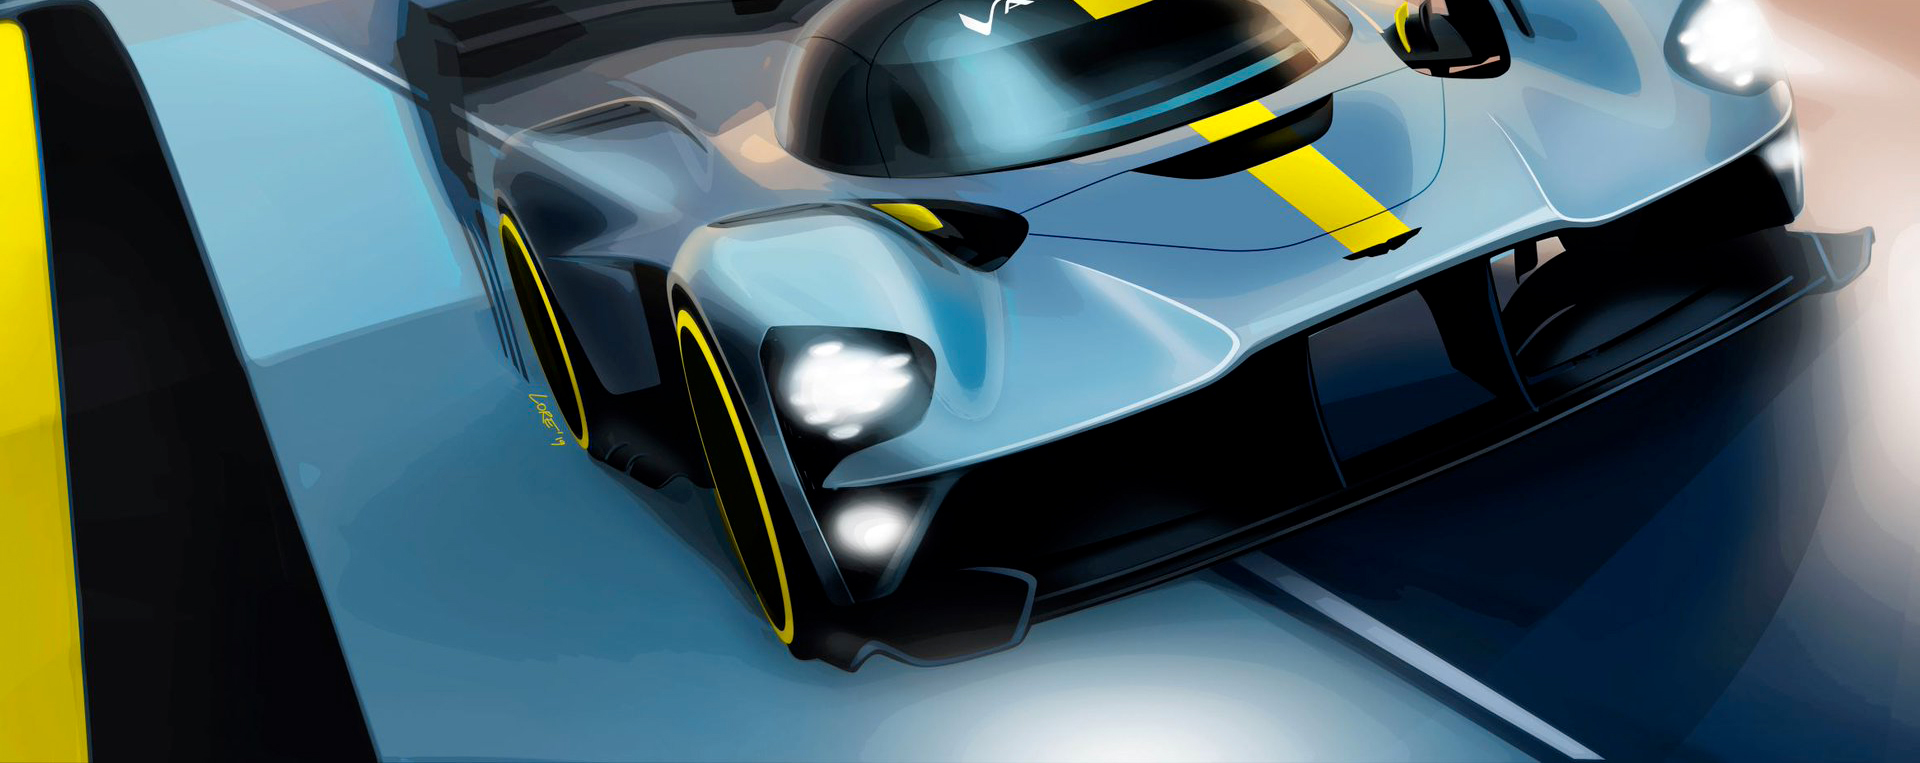 Hypercar : réglementation Le Mans 2020